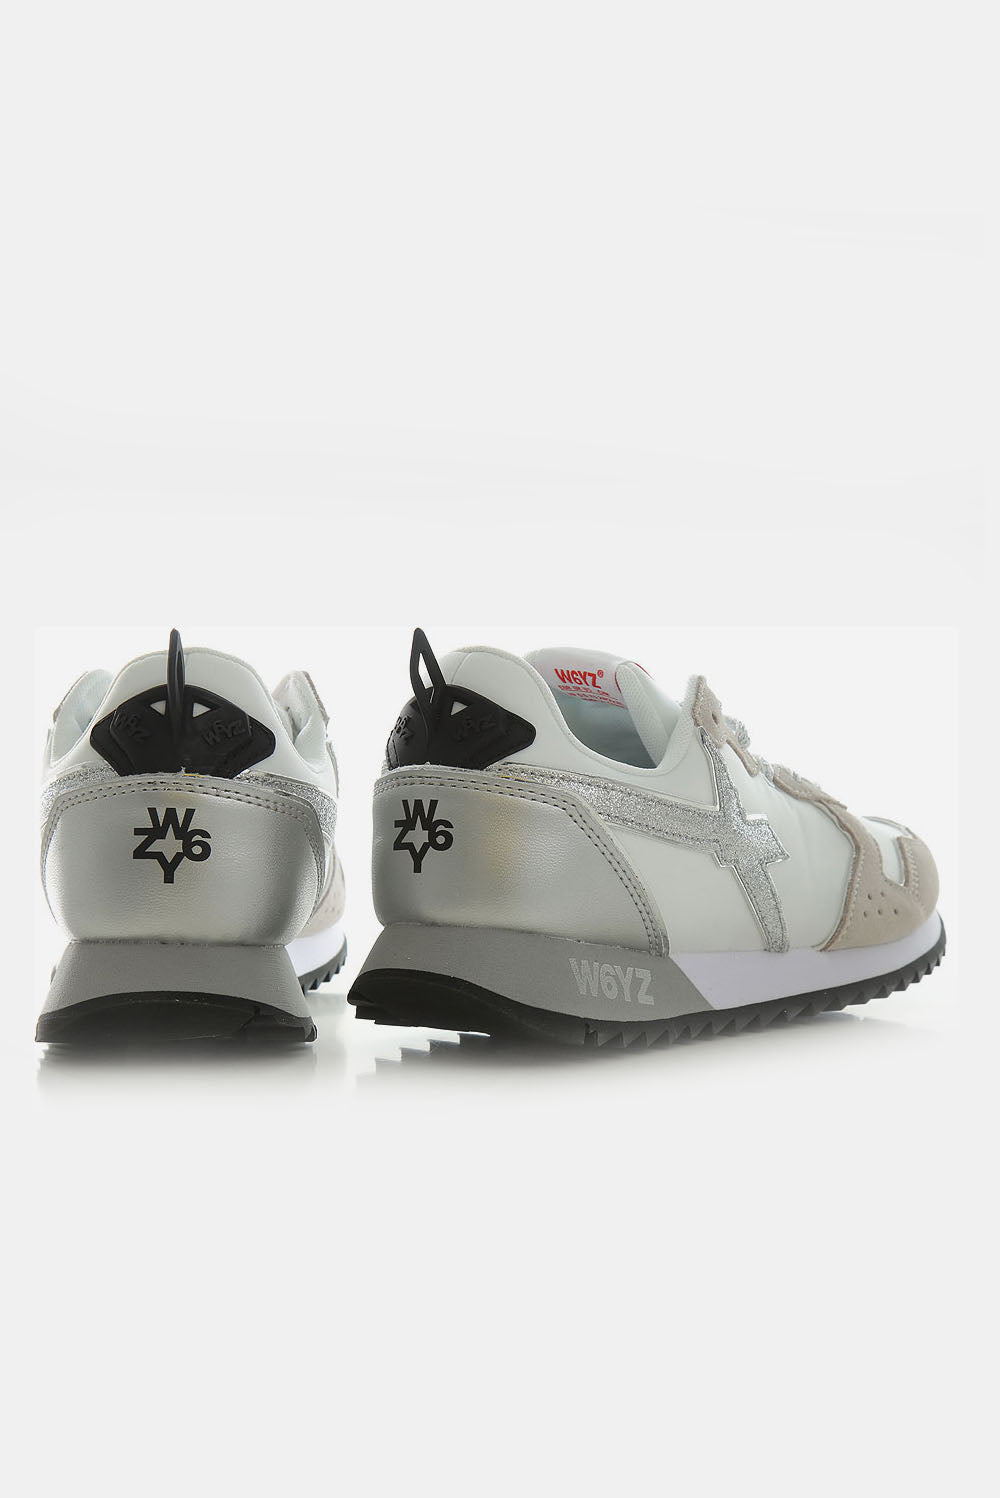  W6yz Sneakers Yak White Woman - 2